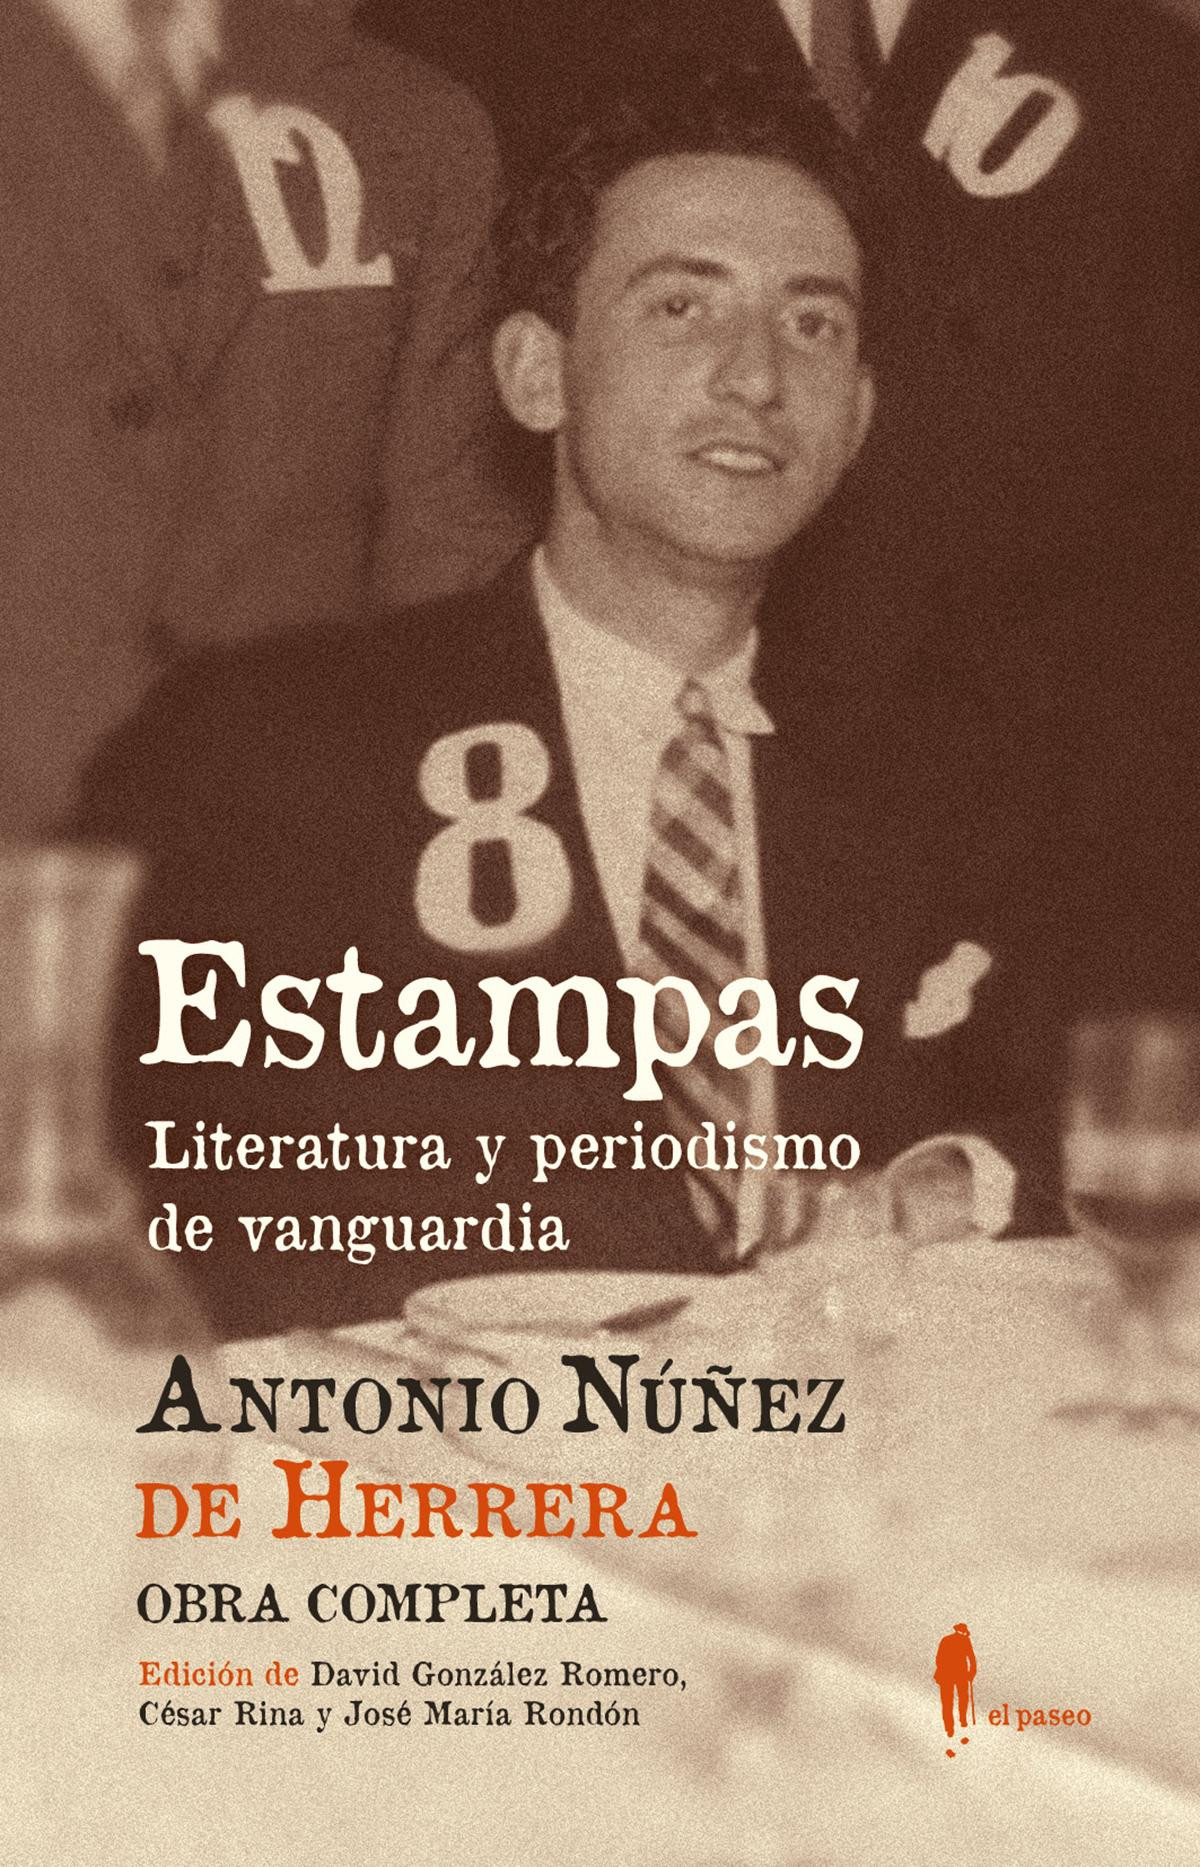 Antonio Núñez de Herrera